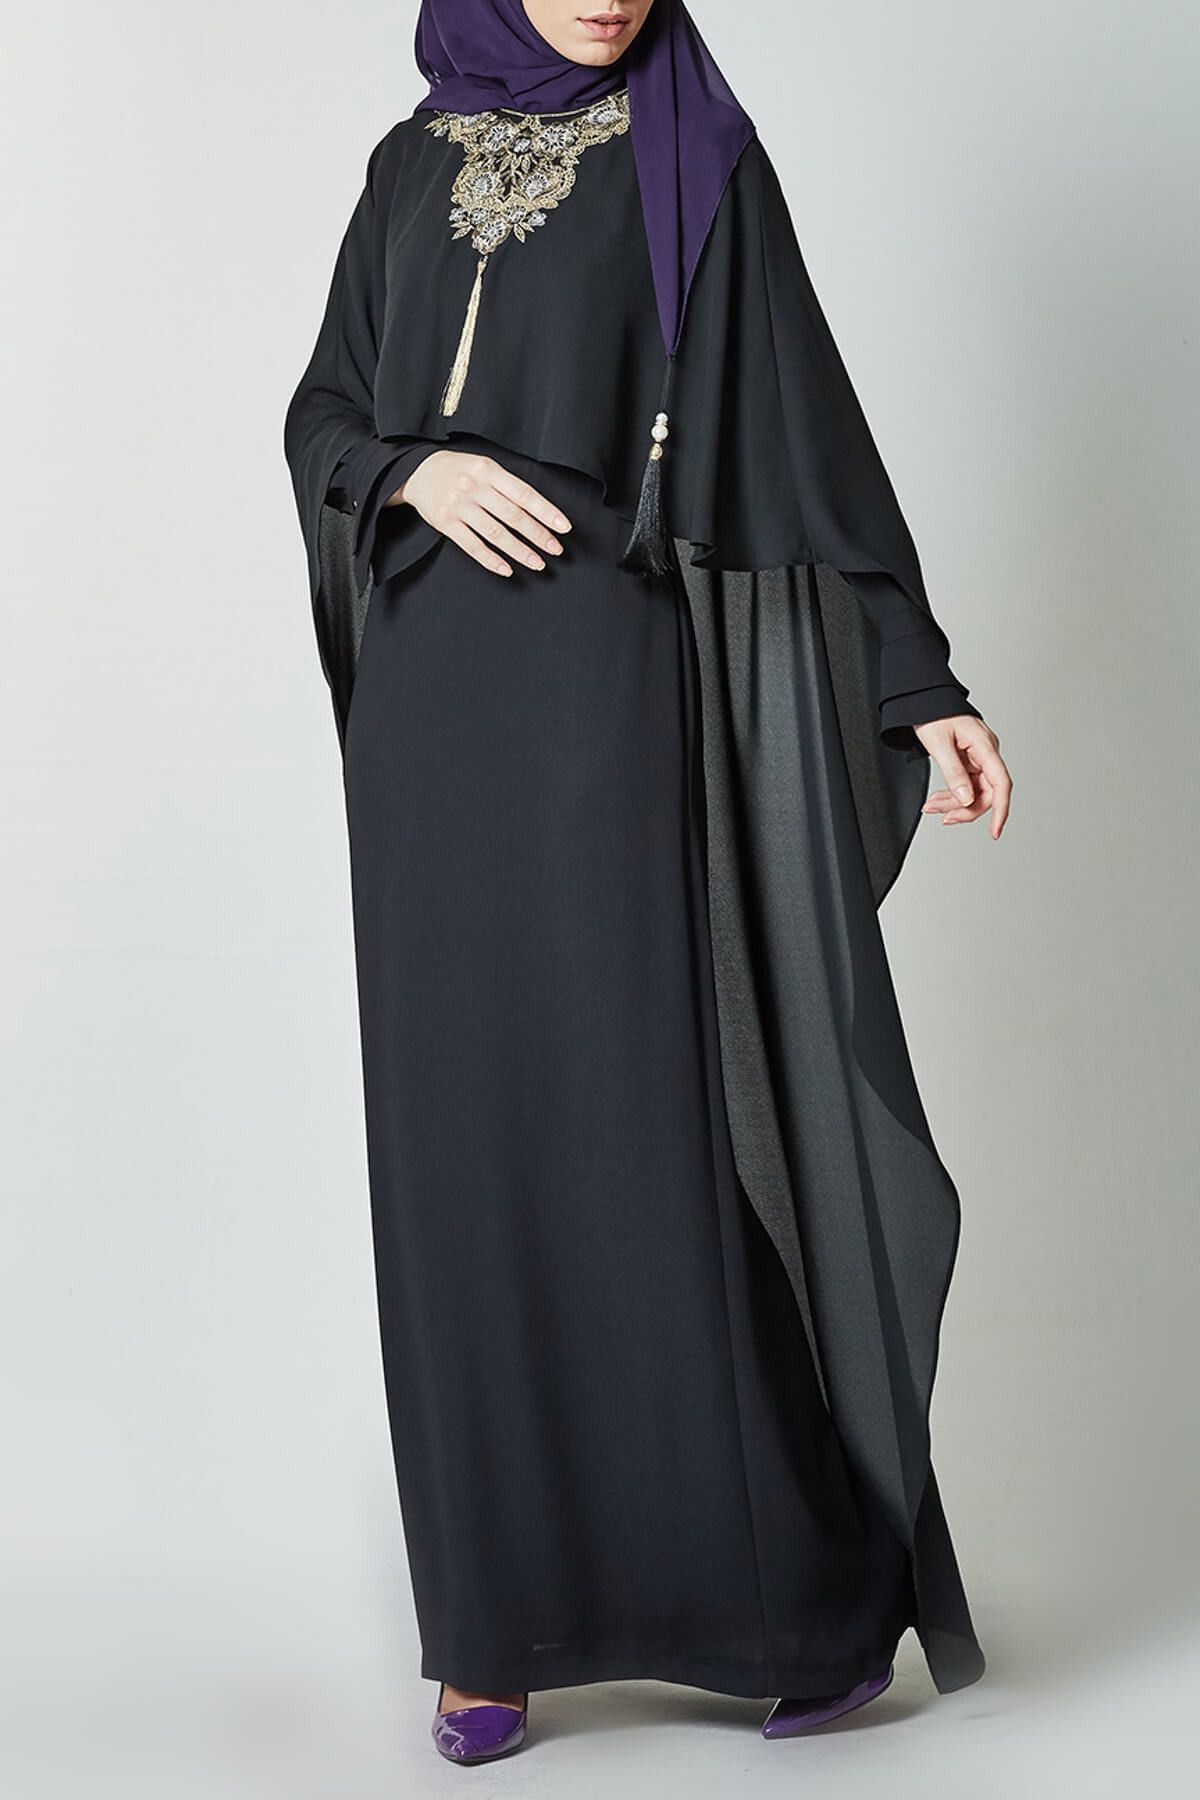 Kayra Kadın Siyah Elbise KA-B7-23079-12